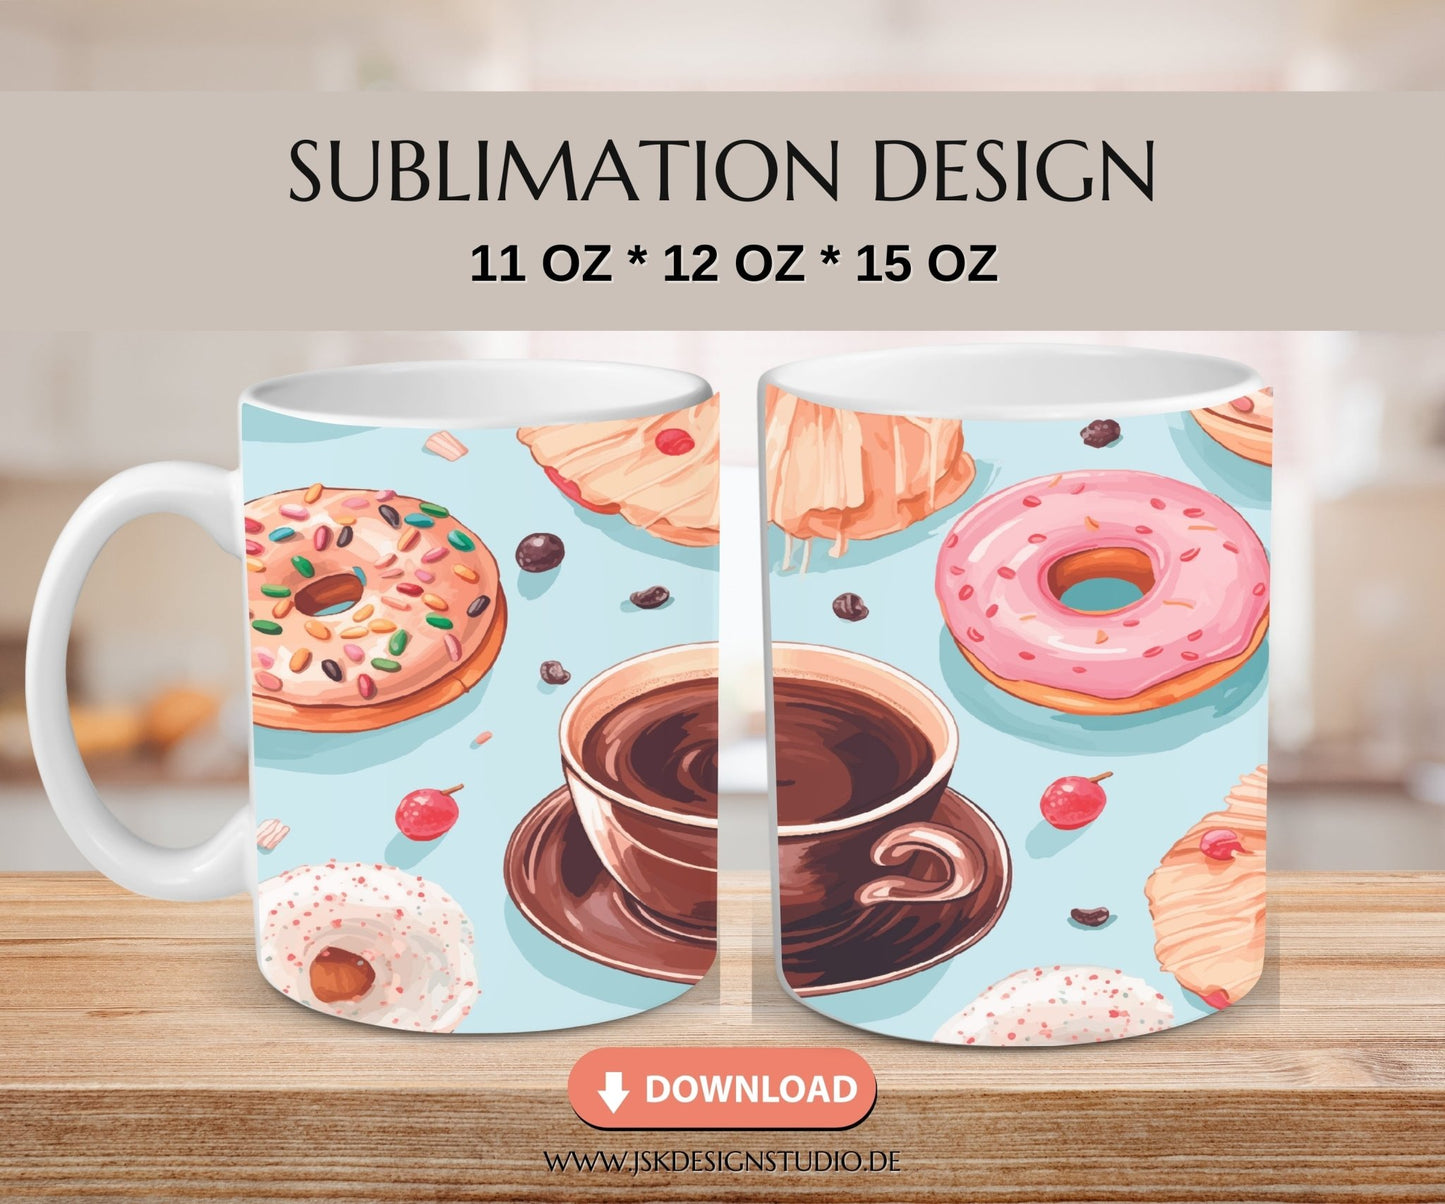 Kaffee mit Donuts - Kaffeetassen Motiv Datei für Sublimation - JSKDesignStudio.de